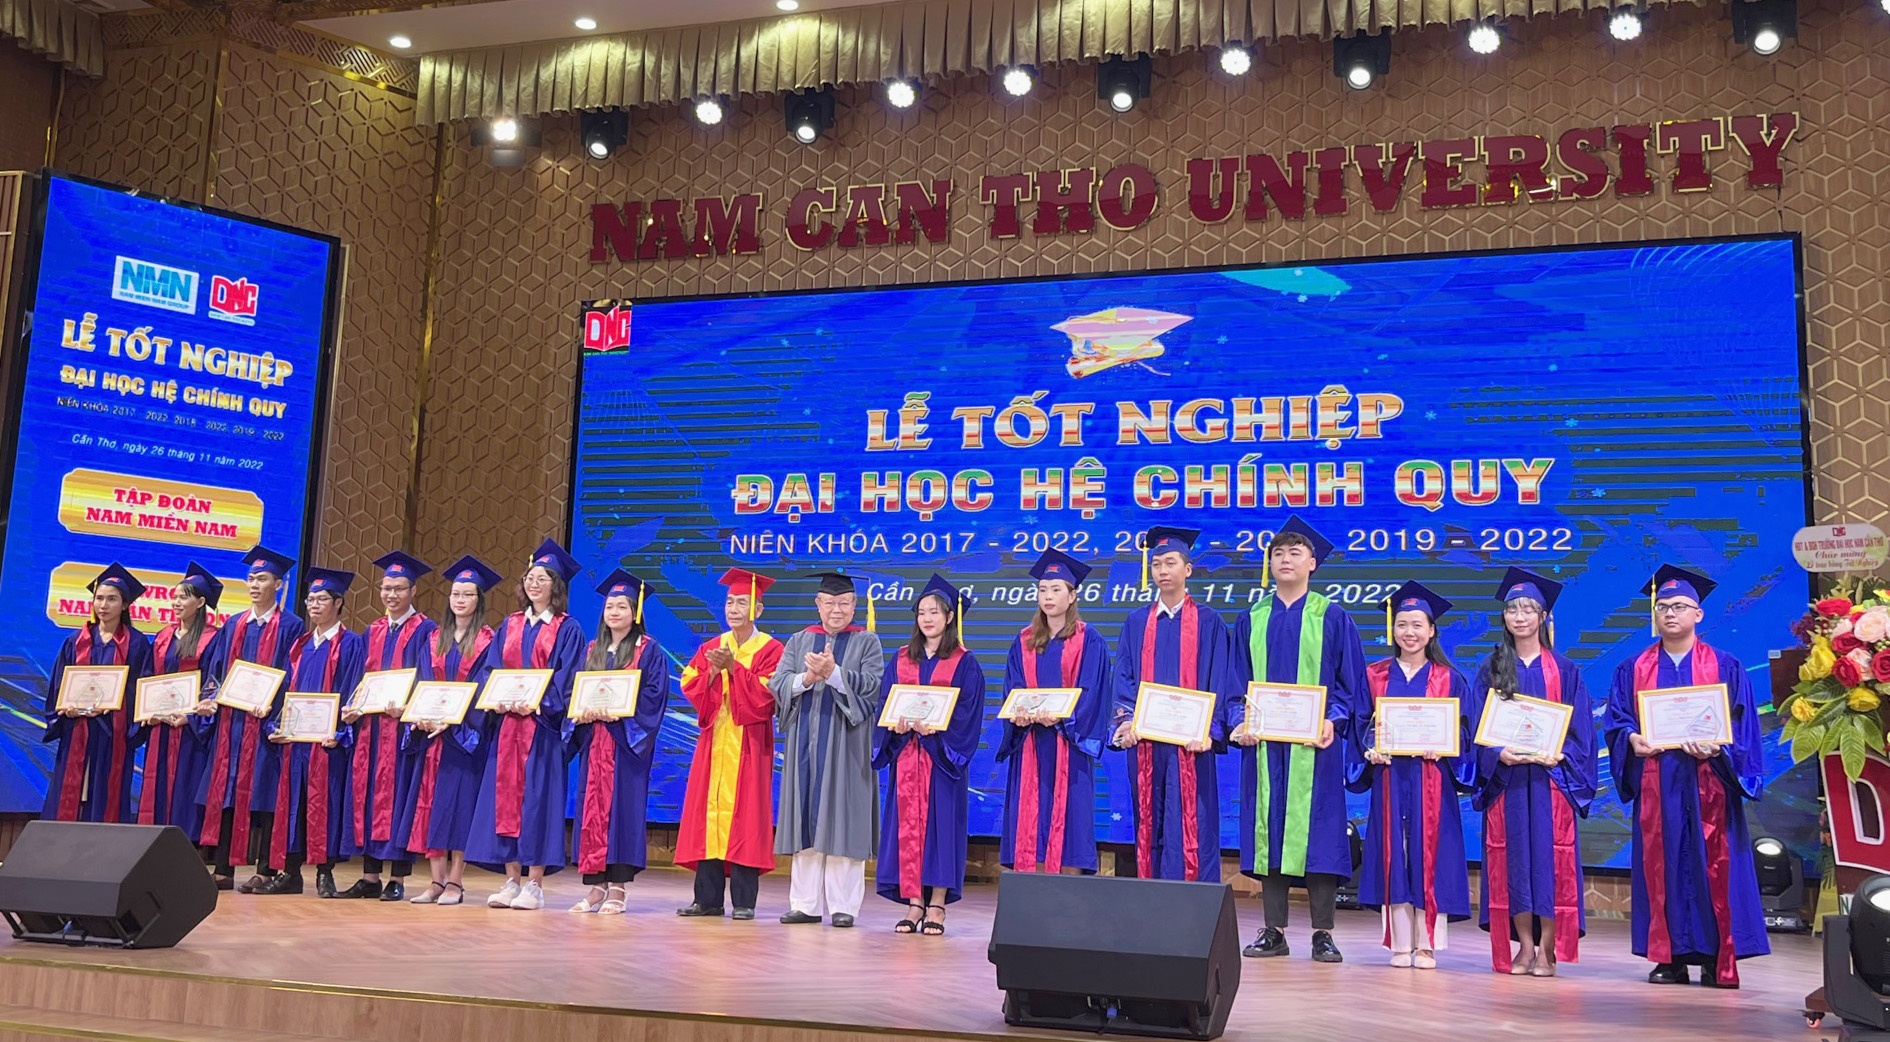 Hơn 1.300 sinh viên Trường ĐH Nam Cần Thơ tốt nghiệp - ảnh 1